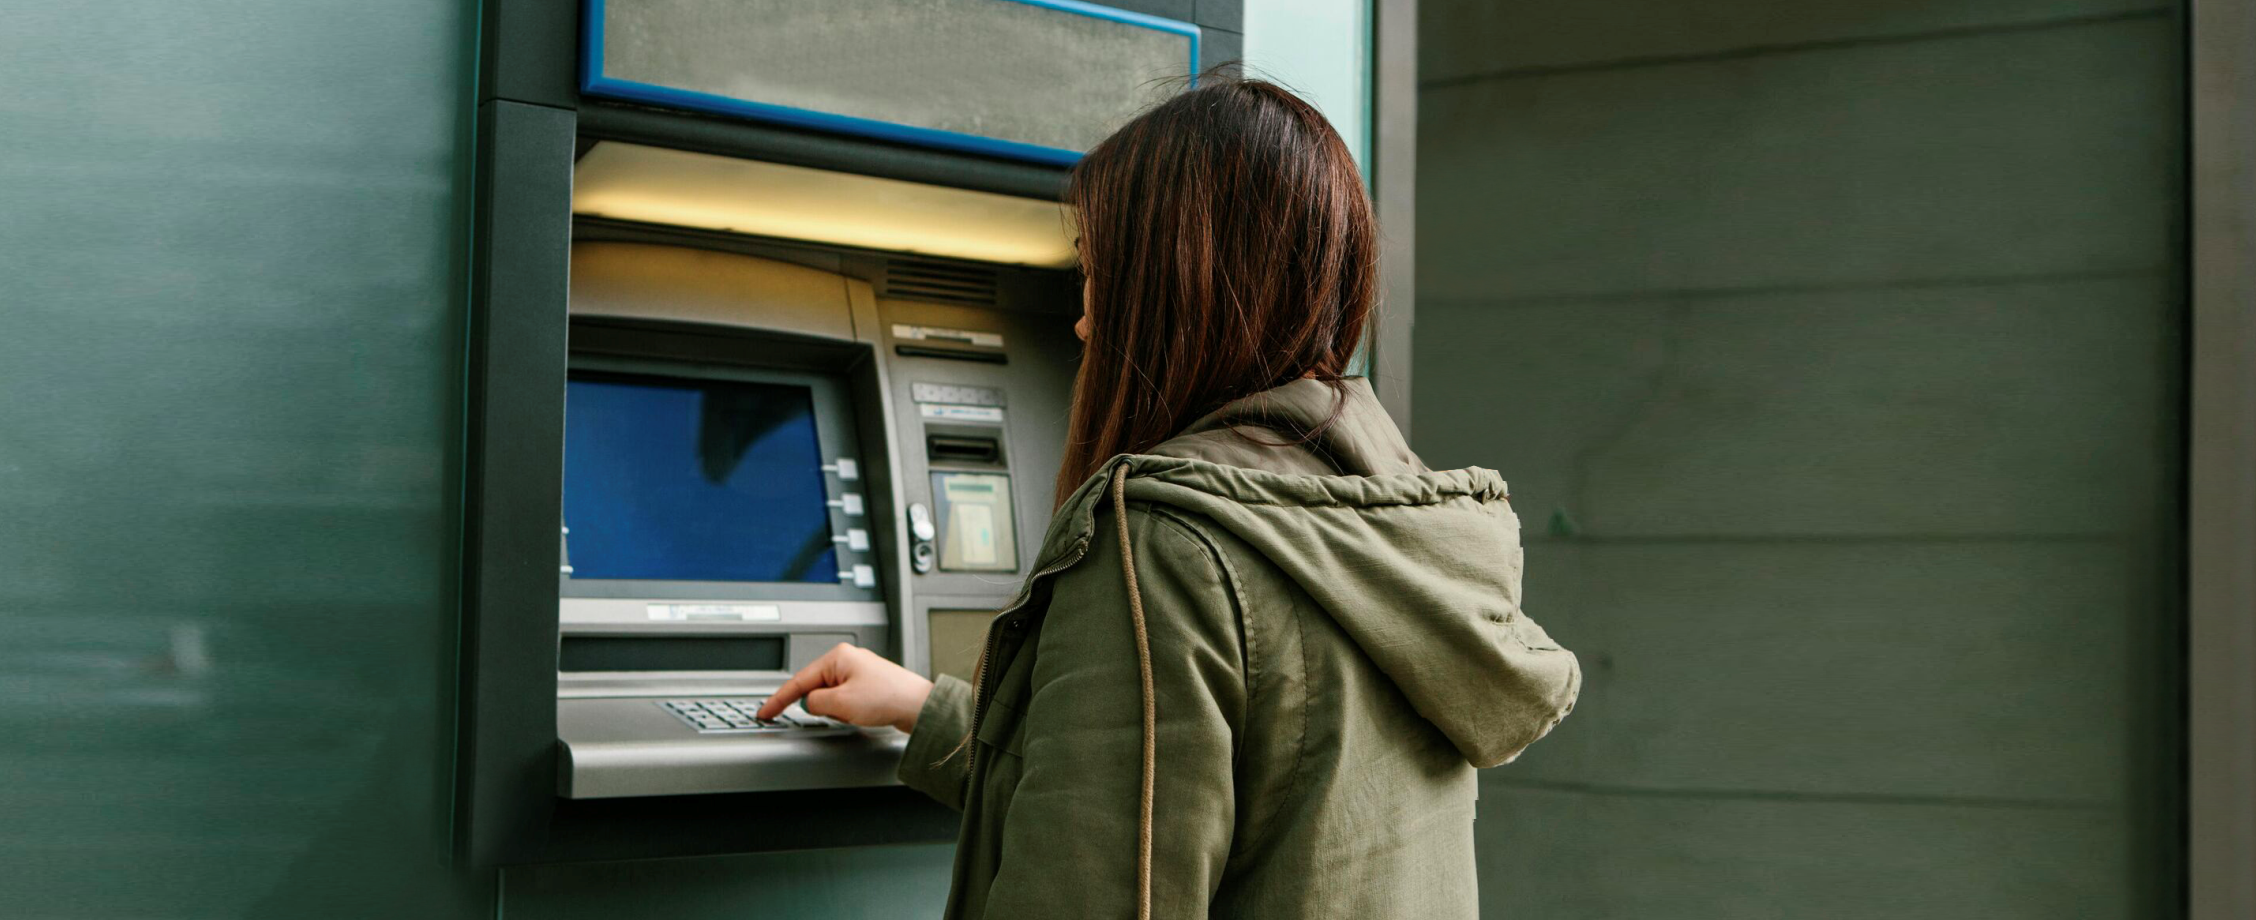 Топ-5 способов украсть ваши деньги через банкомат